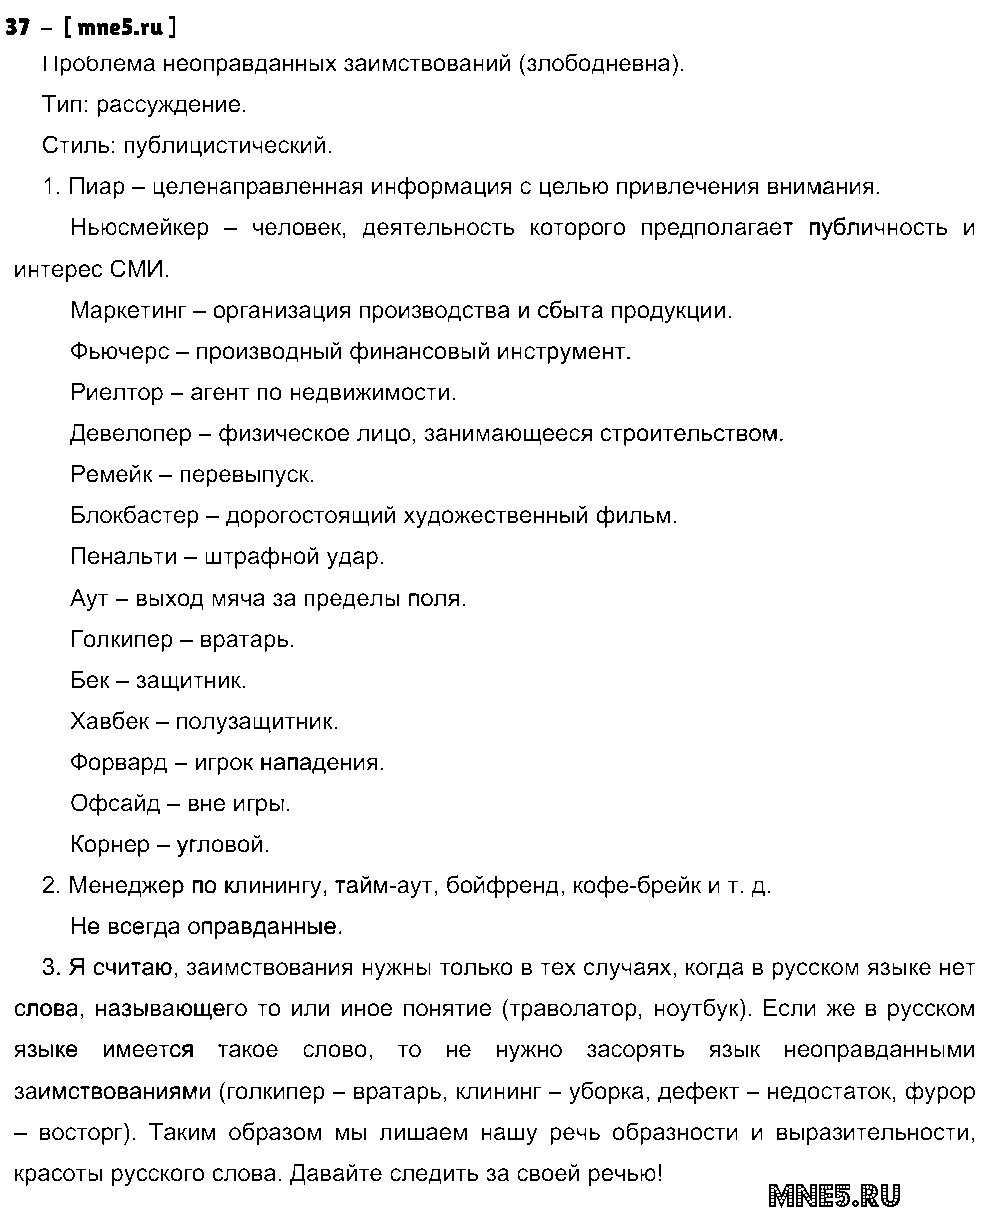 ГДЗ Русский язык 10 класс - 37